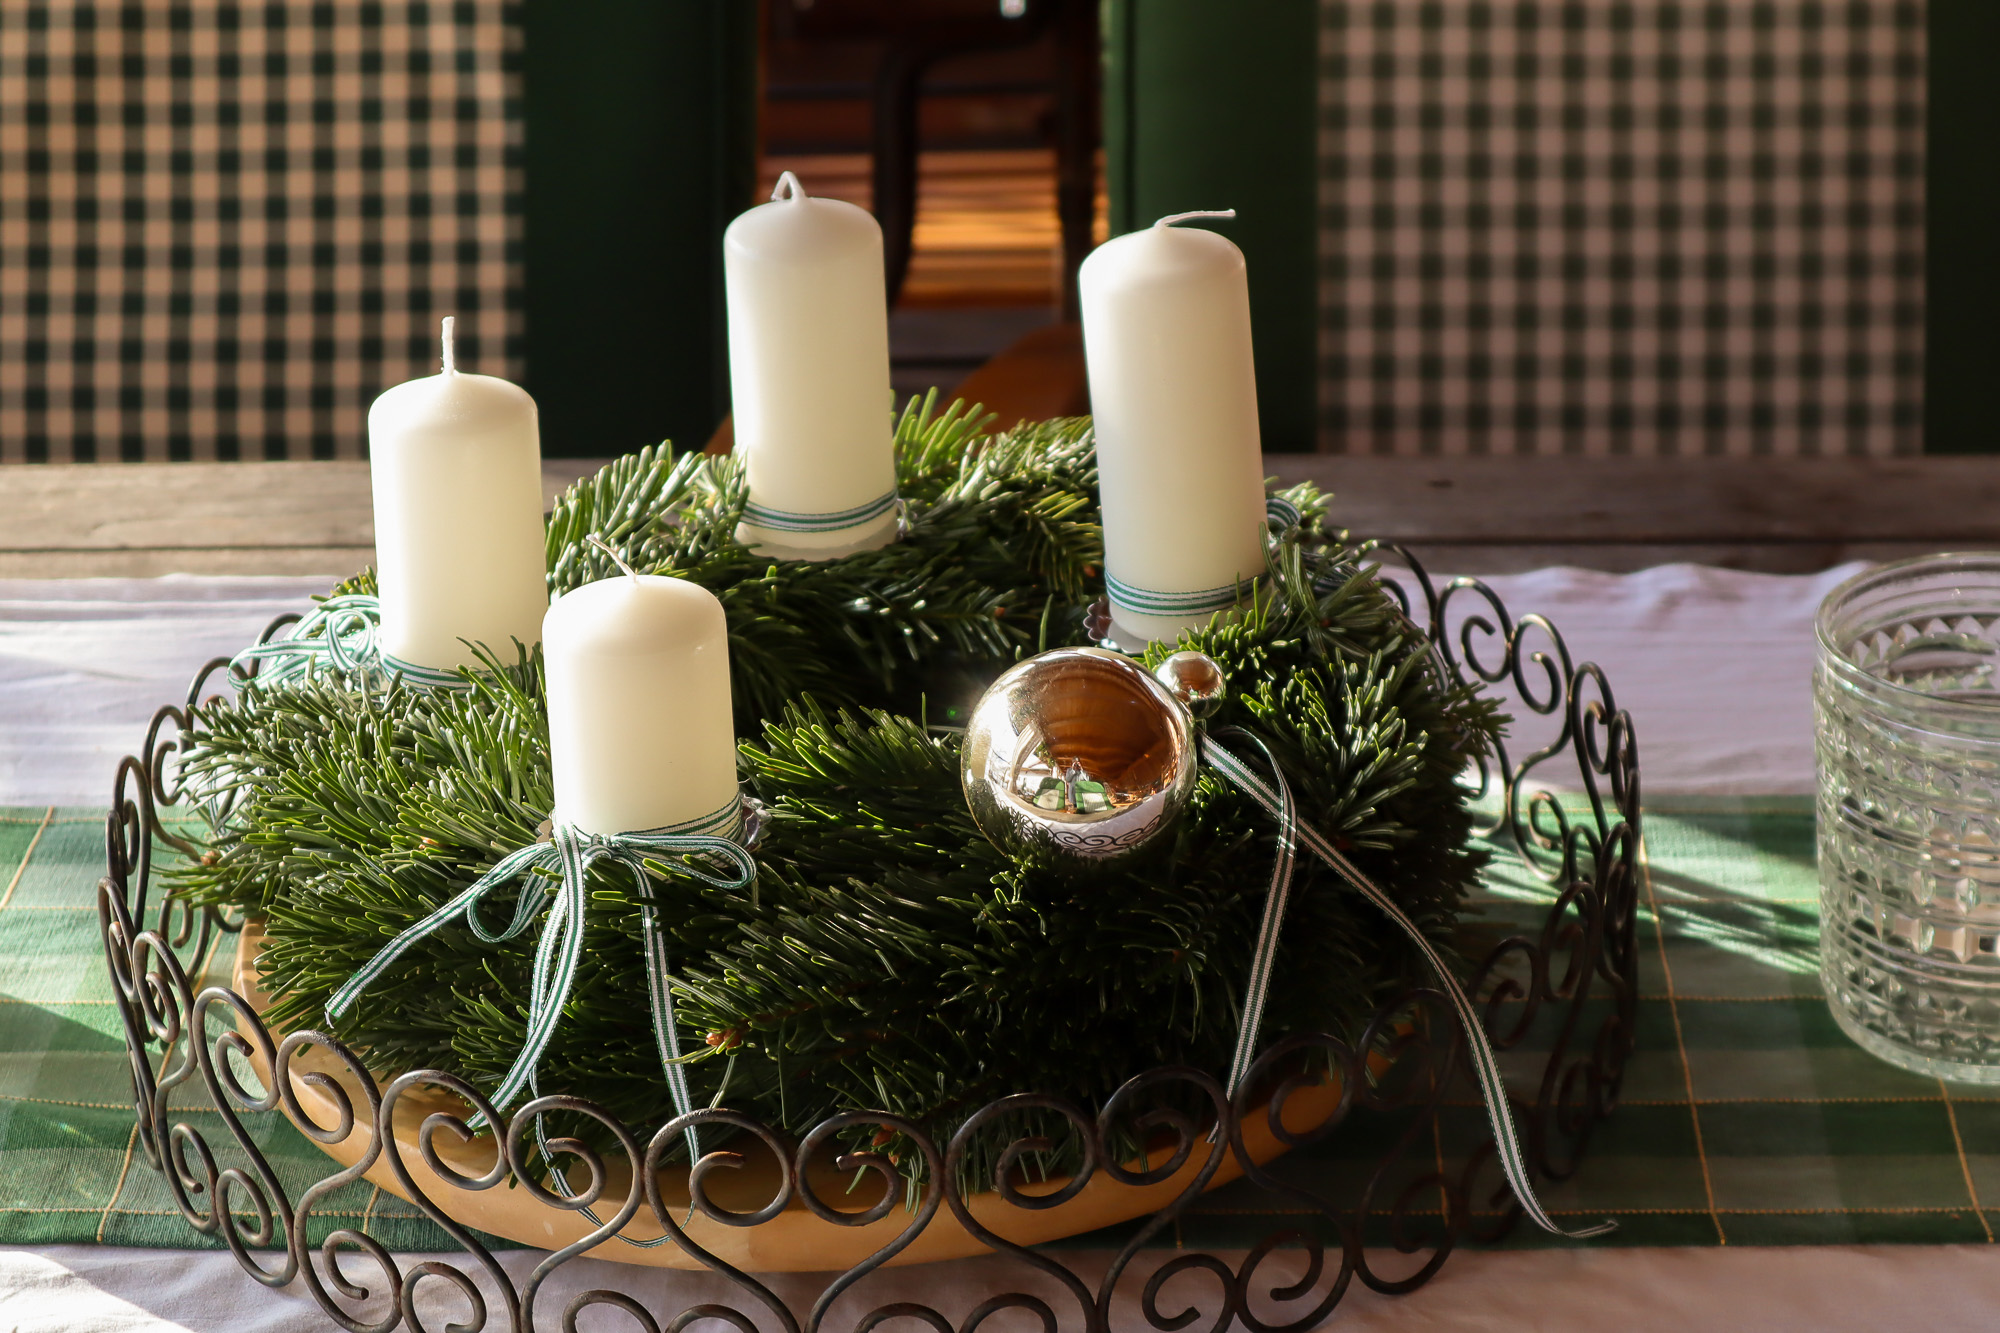 Adventkranz mit weißen Kerzen und frischem Tannengrün